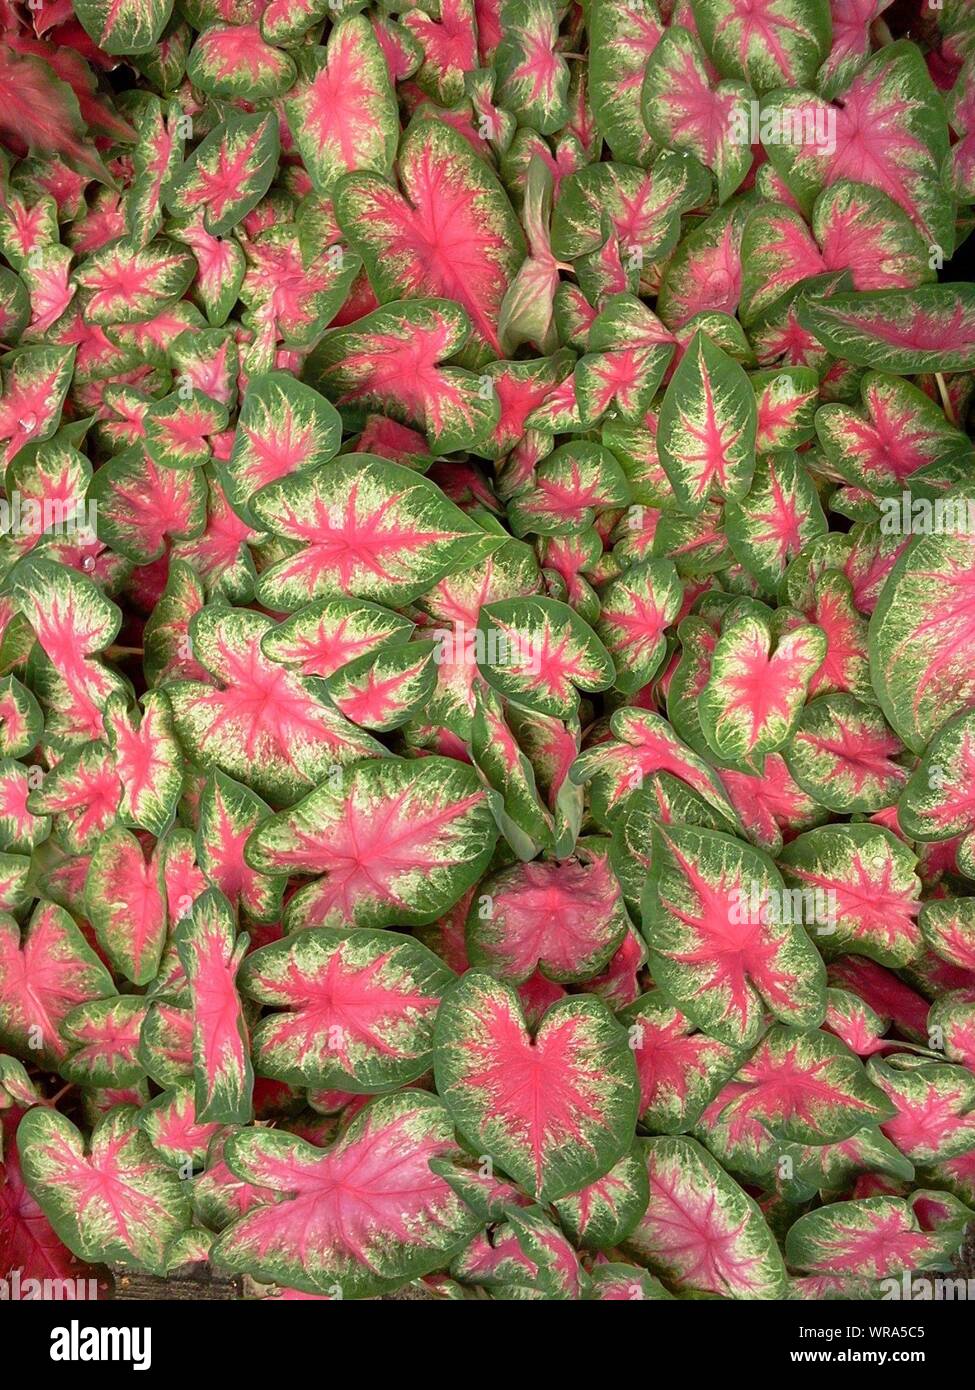 Caladium Leaves Stock Photo